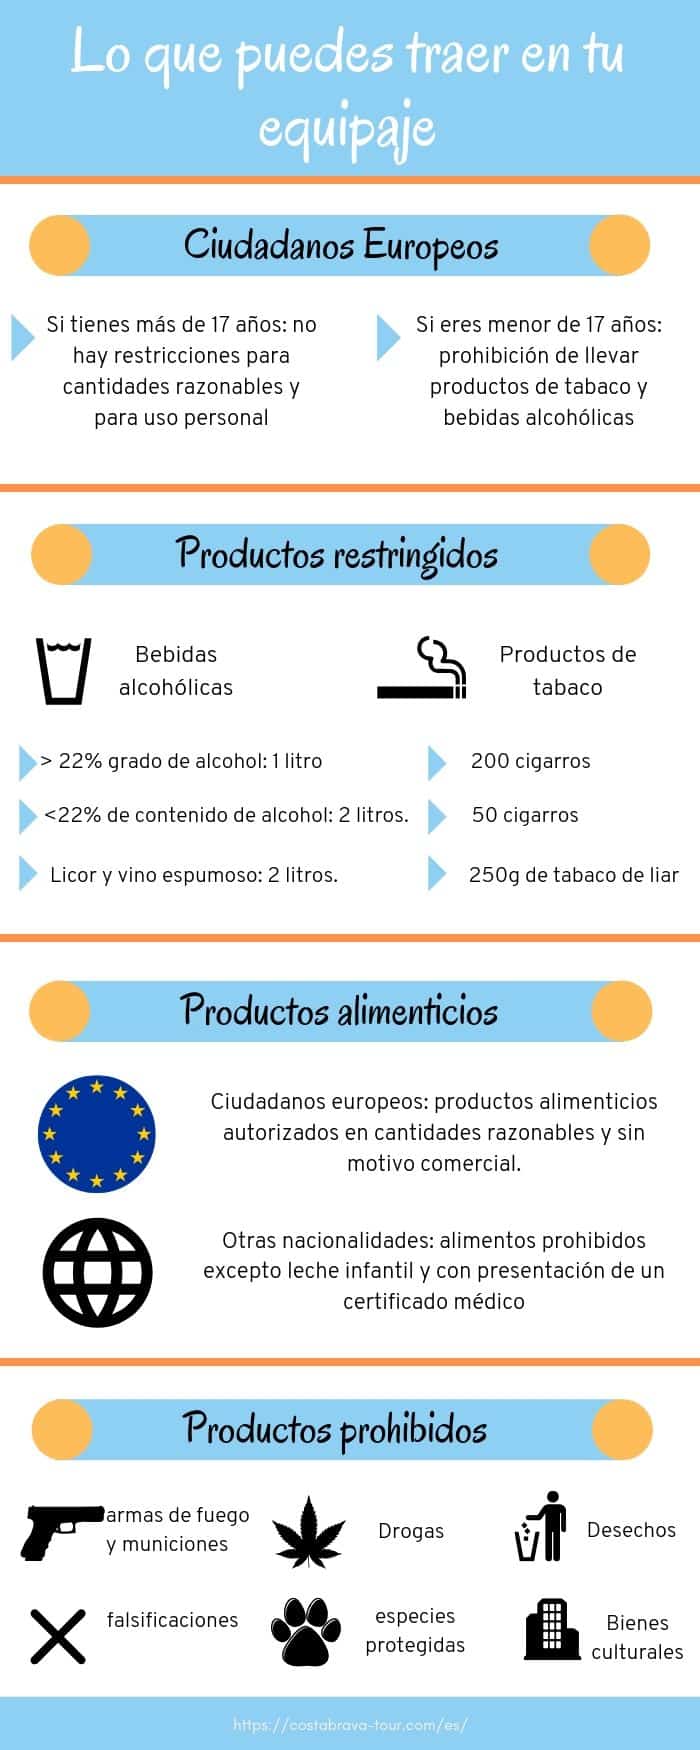 Productos prohibidos en España